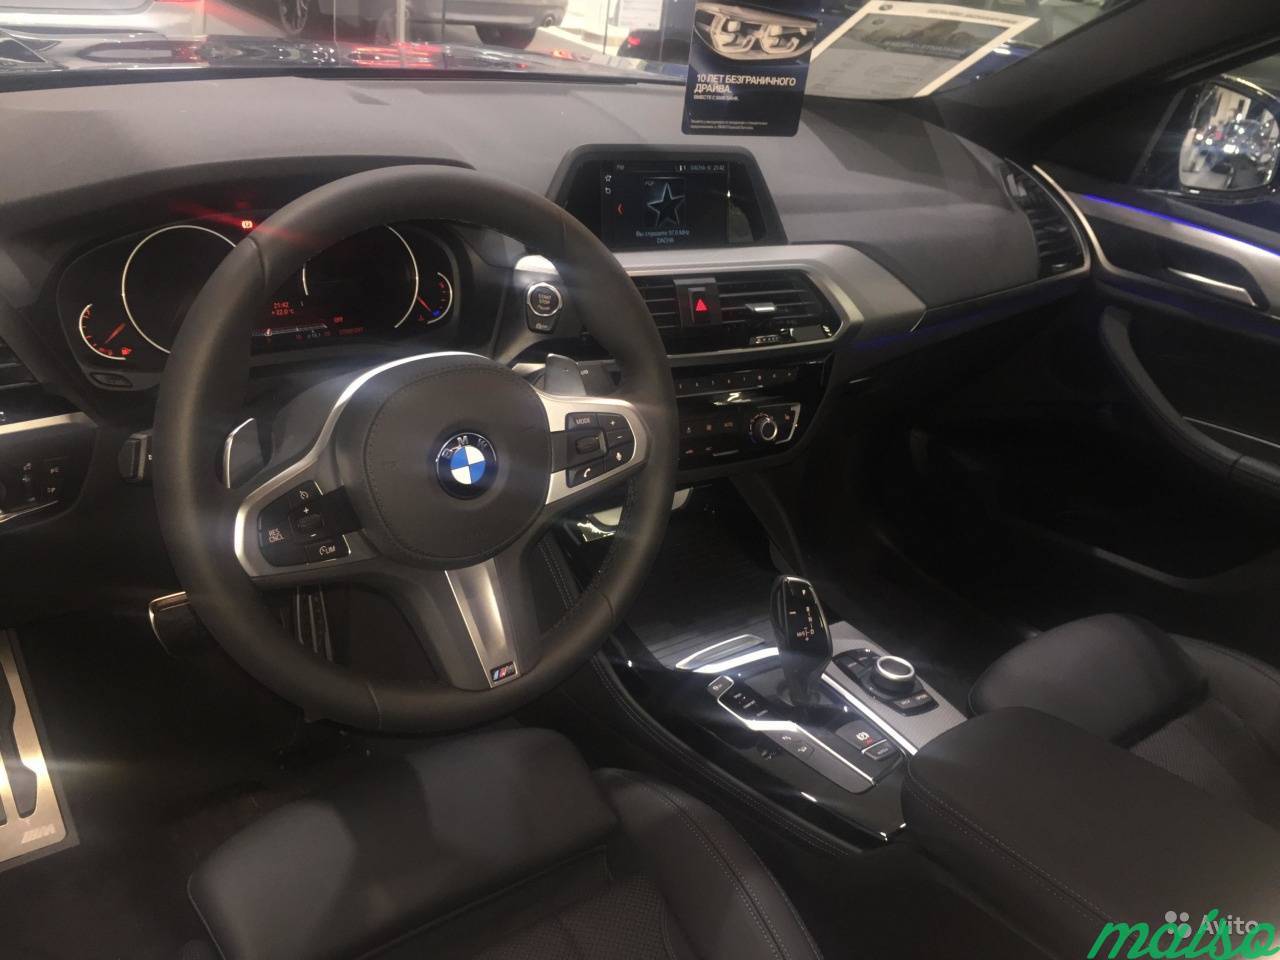 BMW X4 2.0 AT, 2018, внедорожник в Санкт-Петербурге. Фото 3